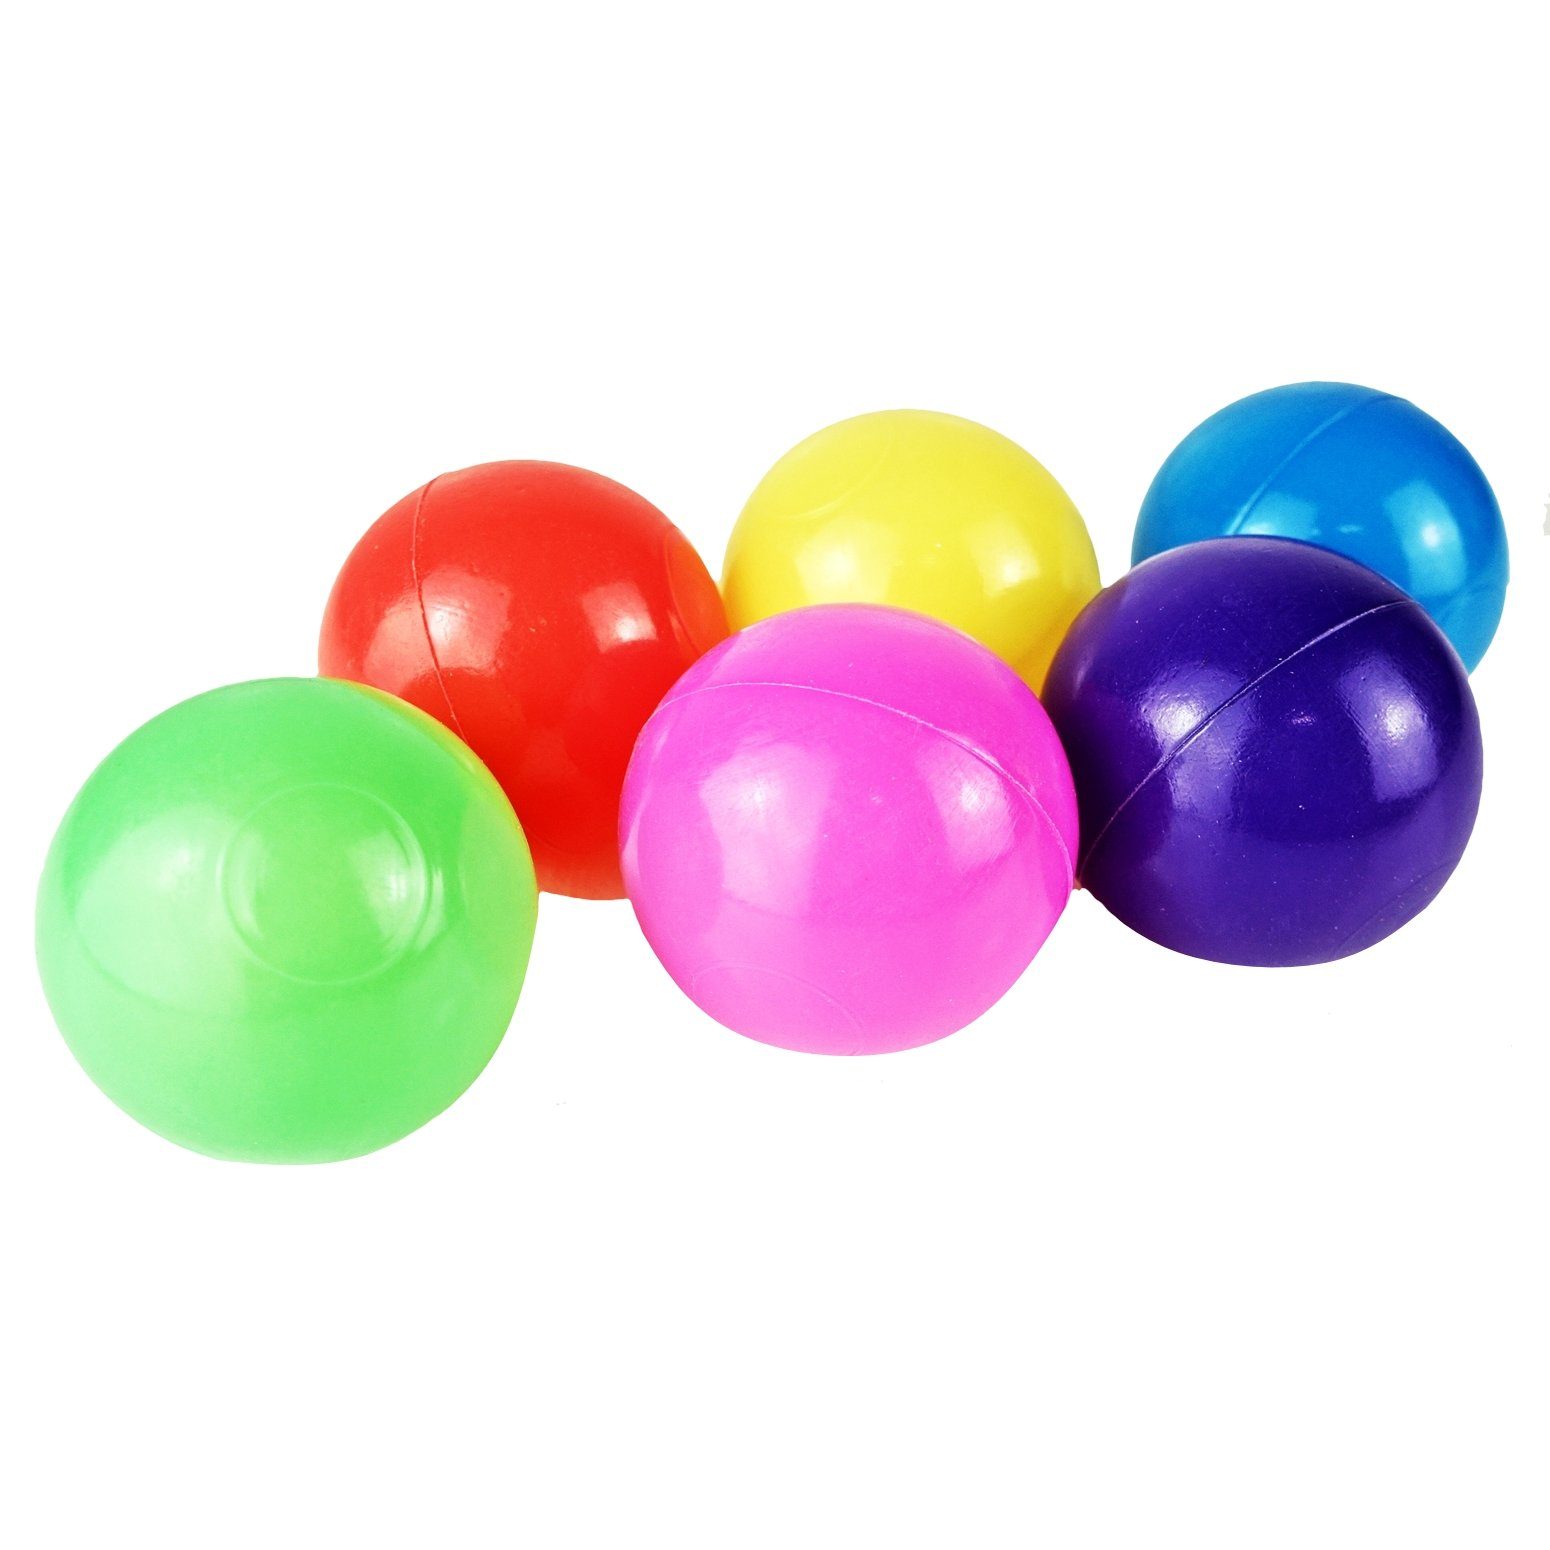 Ball Bällebad-Bälle Mischung - 5,5cm Softball Ø - Bällebad Bälle BAYLI bunte Farben 2700